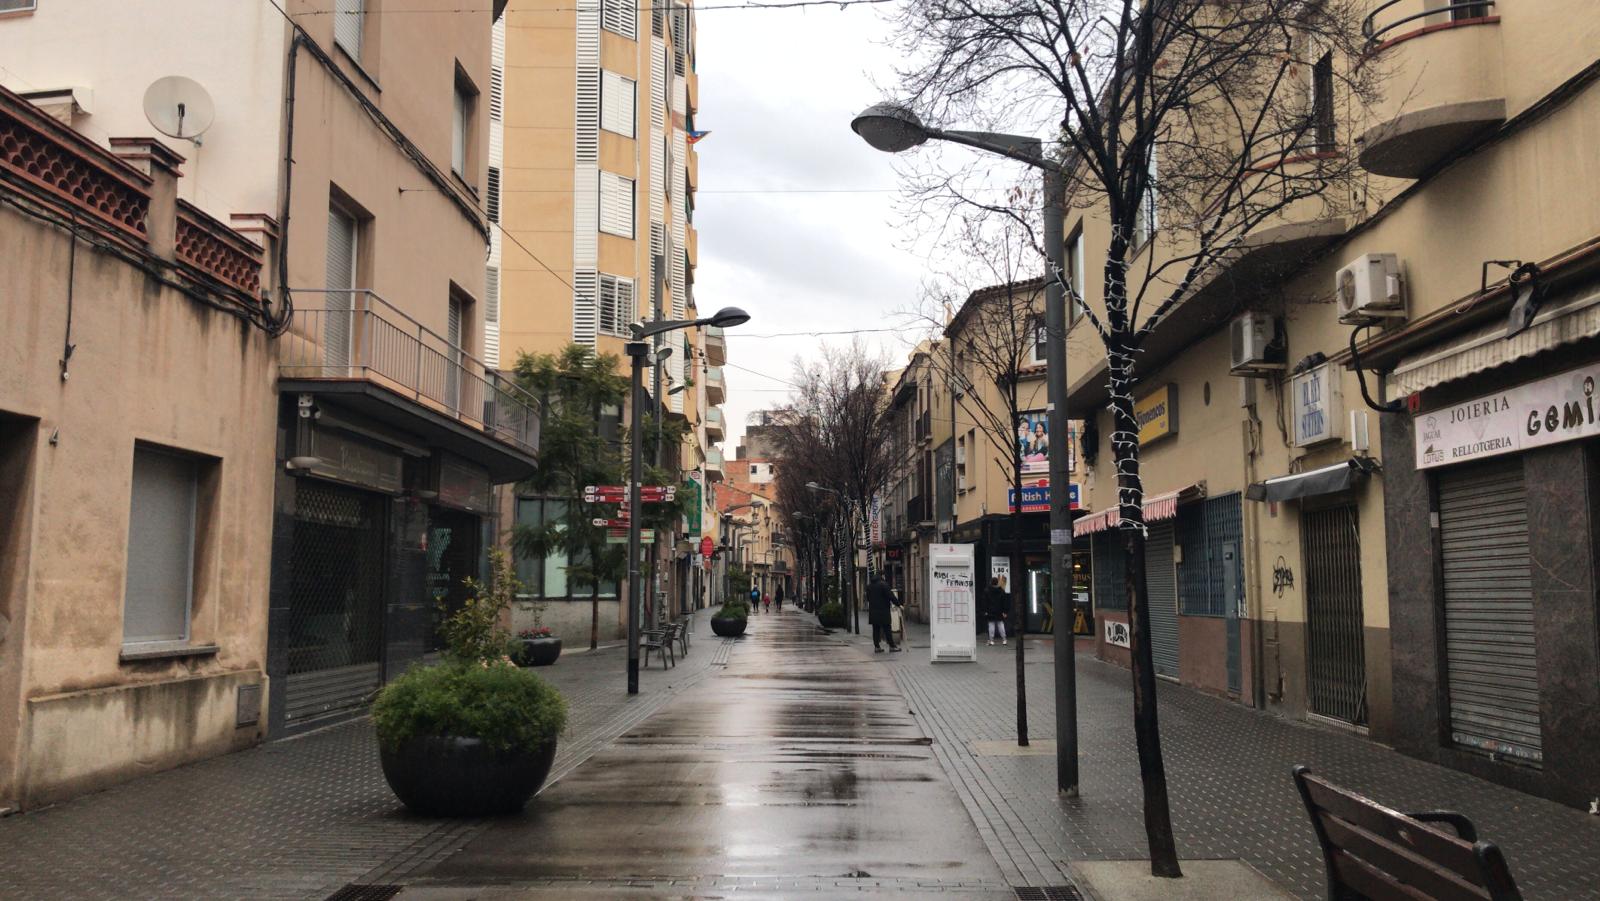 El mal temps i les botigues tancades deixen el centre de Rubí pràcticament buit. FOTO: Andrea Martínez